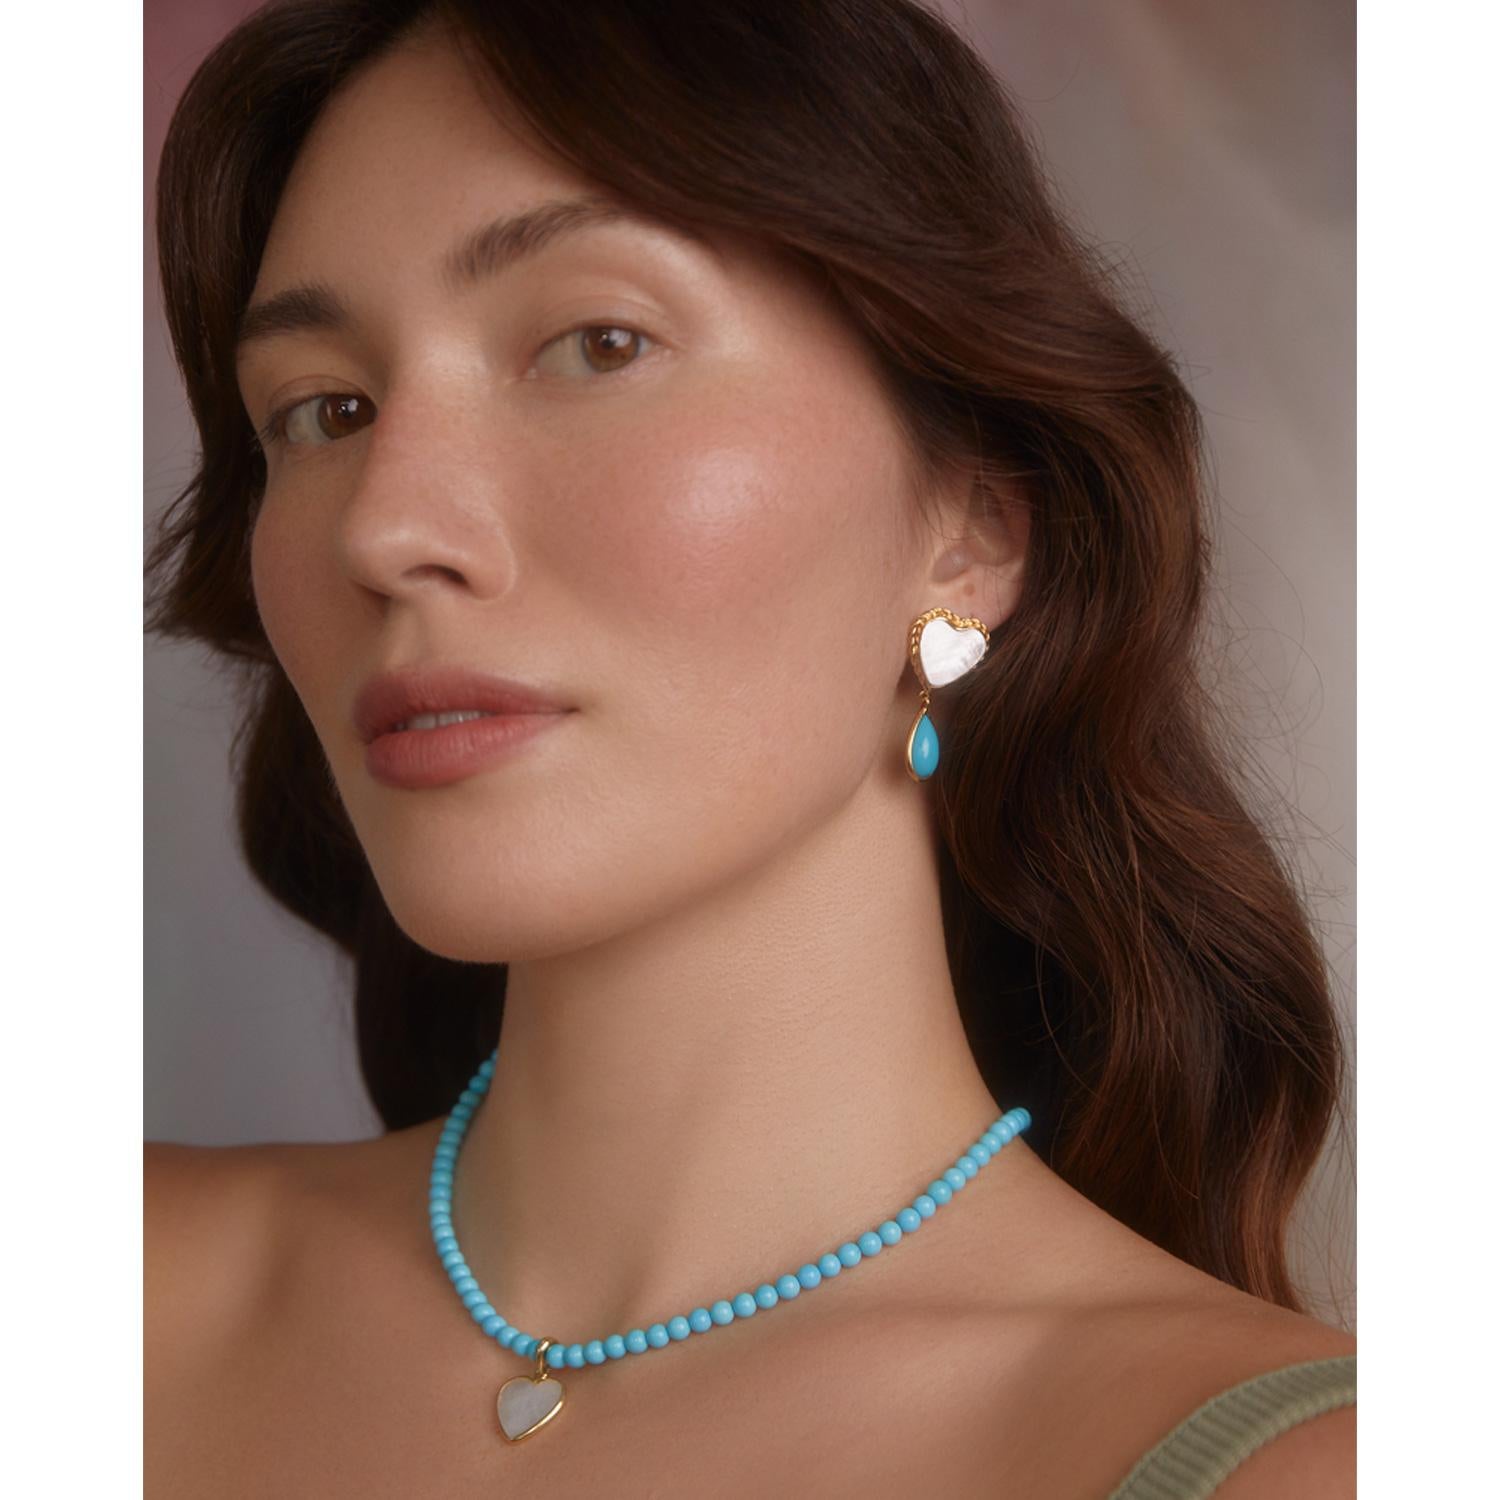 Le collier Happy Heart de Vintouch Jewels est centré sur un pendentif en forme de cœur en nacre irisée qui brille comme la rosée du matin. Il est fabriqué à la main en Italie en vermeil 24 carats et est orné de perles de turquoise naturelle dans des